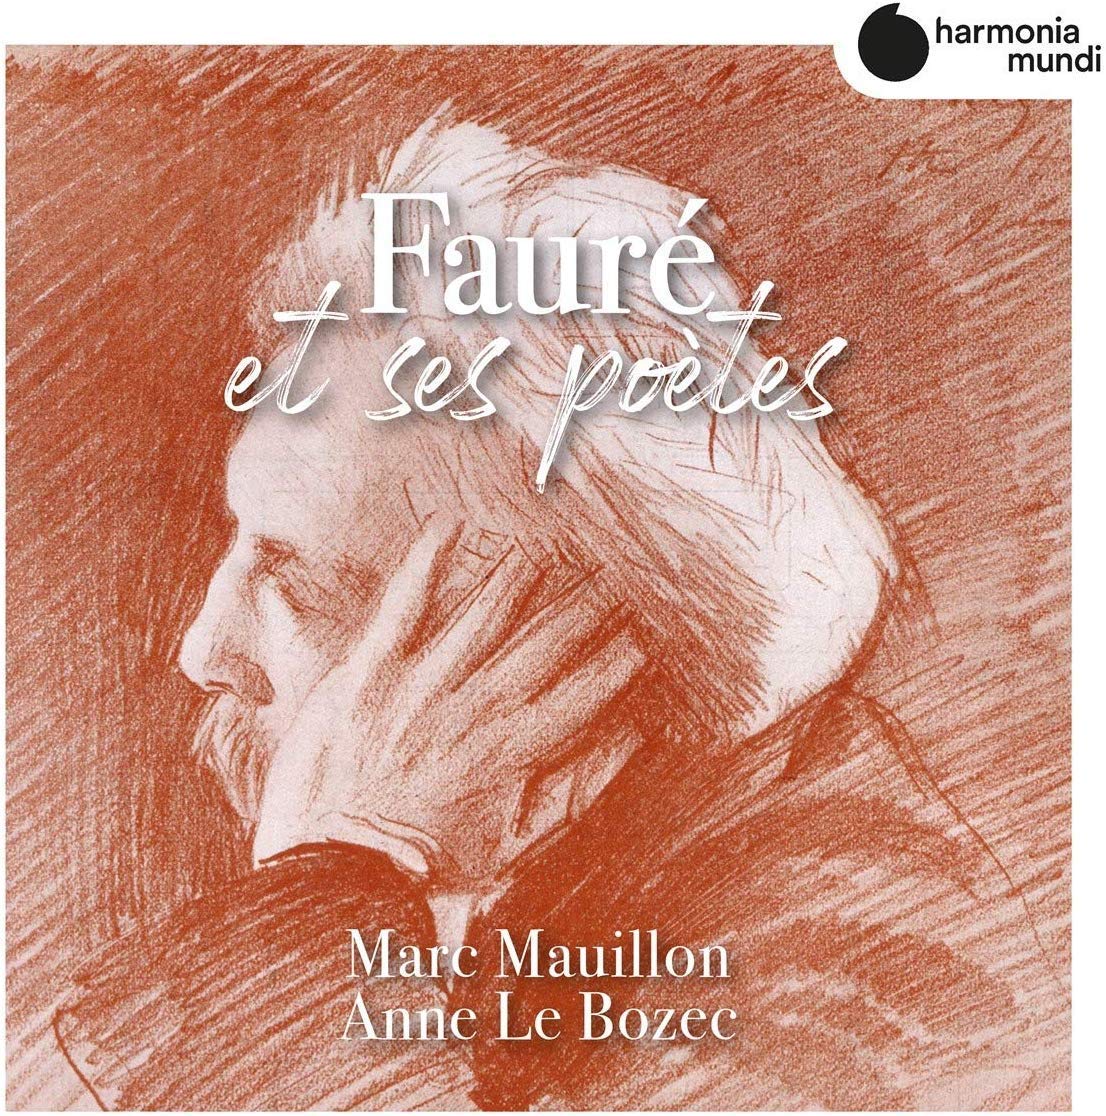 HMM90 2636. FAURÉ 'Fauré et ses poètes'